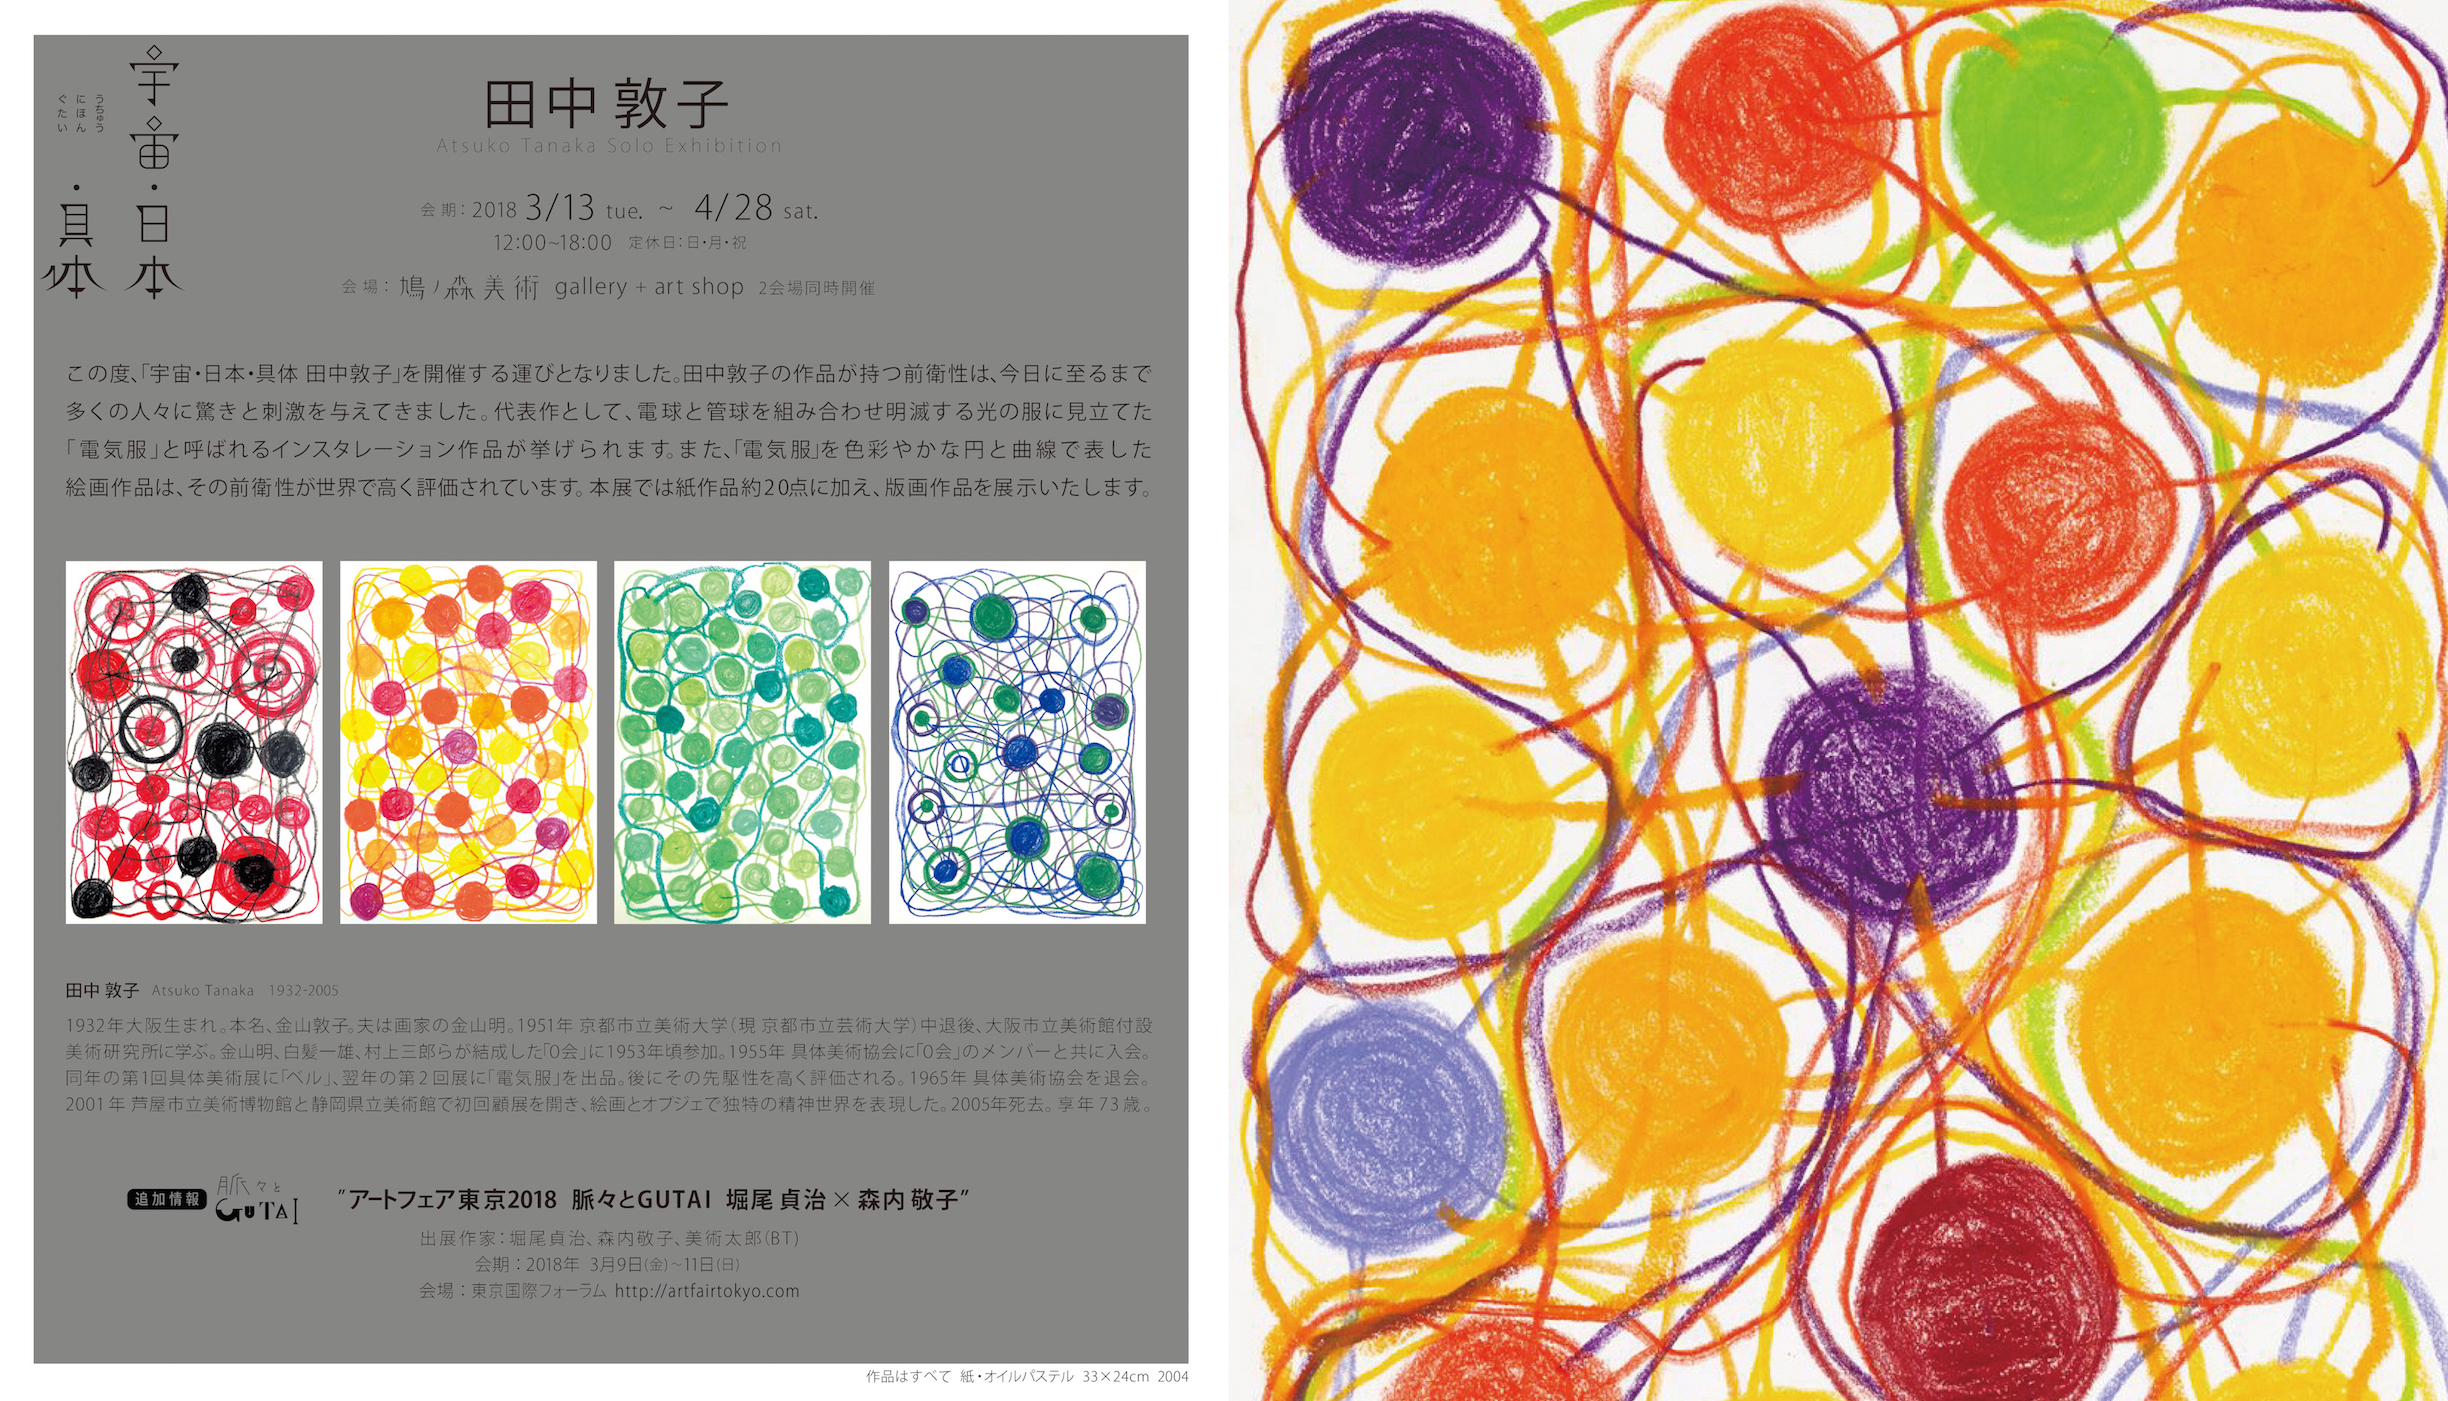 【通販正規品】田中敦子 抽象肉筆 希少作 模写 具体美術協会 資産家収蔵品 3F19.13D 抽象画